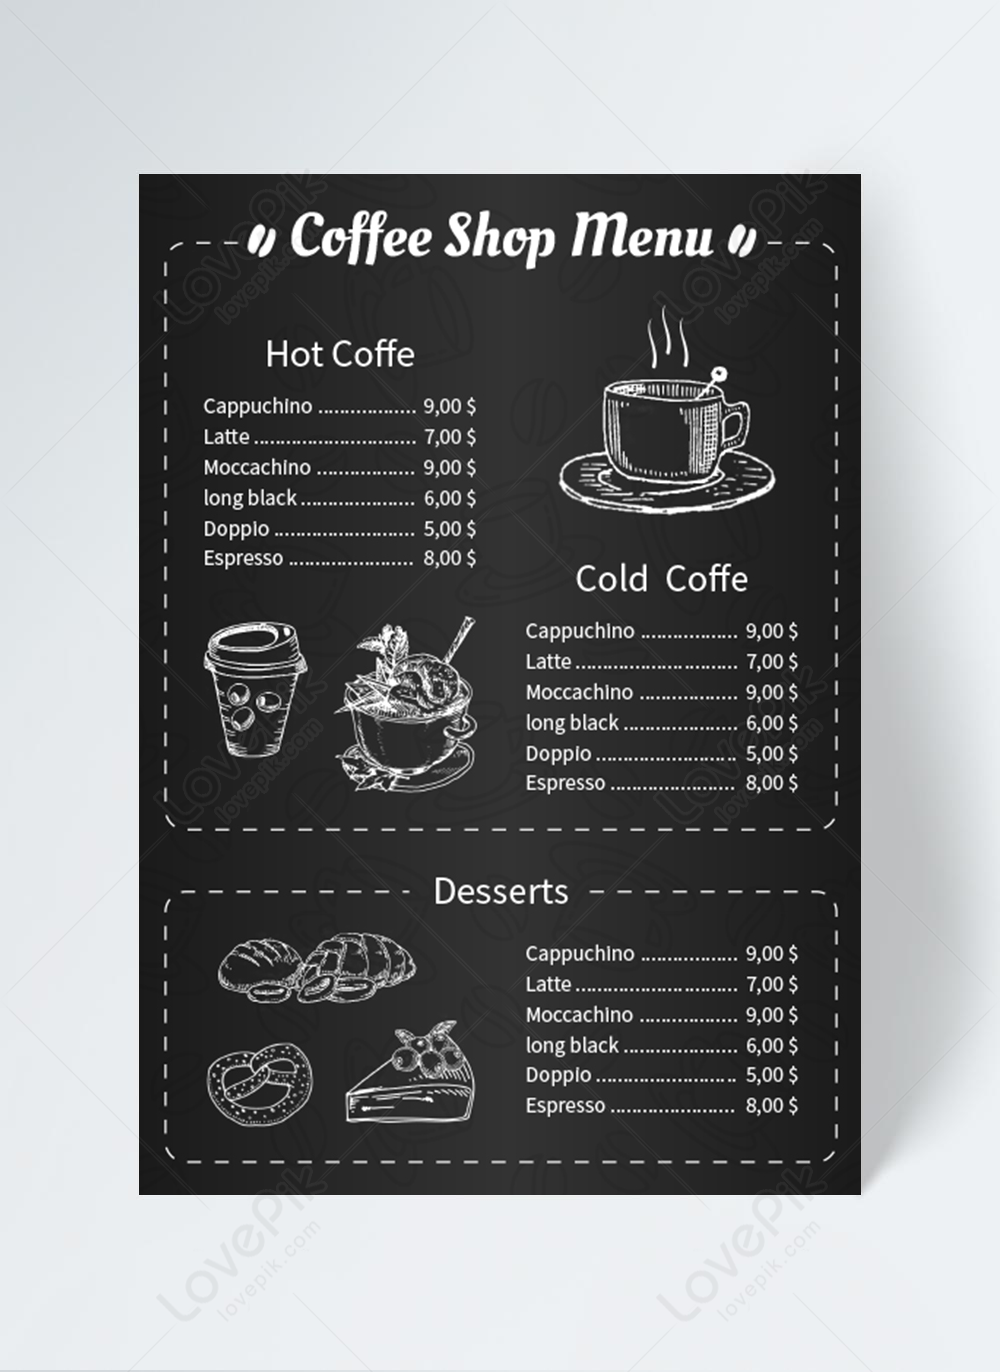 Độc đáo và phong cách là những từ mà bạn sẽ cảm thấy khi nhìn vào hình ảnh thiết kế Black list cà phê. Bạn sẽ không muốn bỏ qua trải nghiệm tại quán này!